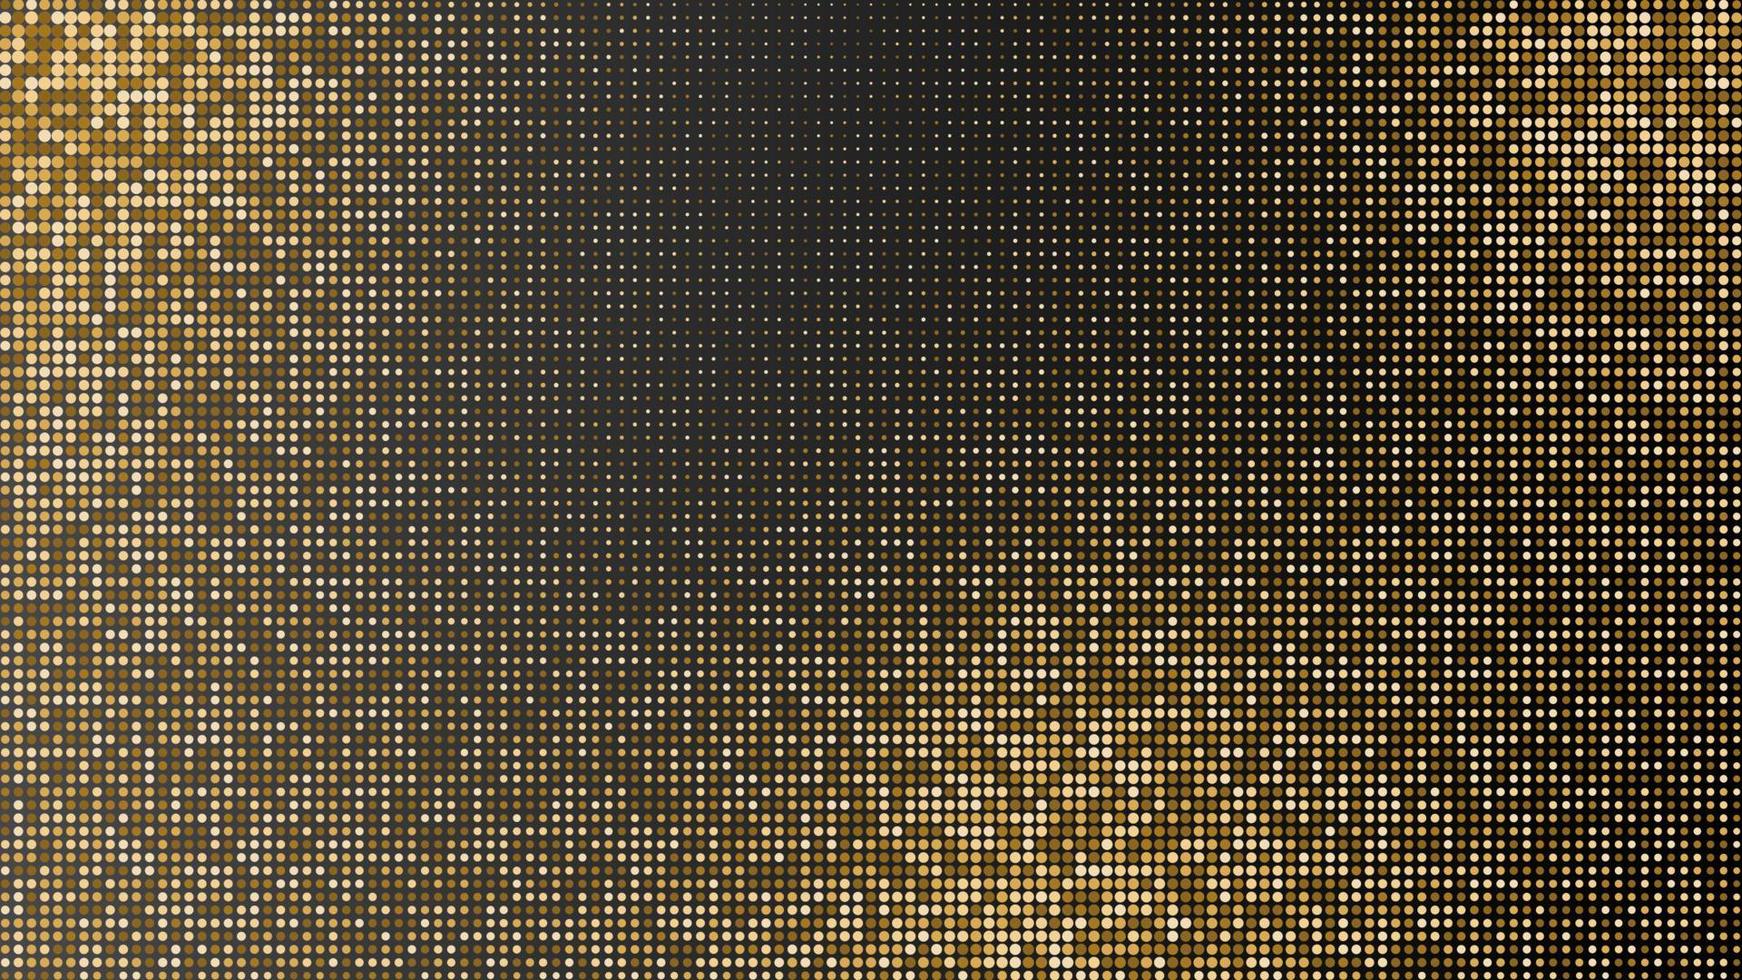 abstrato preto texturizado com padrão de meio-tom dourado radial. ilustração vetorial. elemento de decoração com ornamento pontilhado estampado. modelo de design de capa criativa. vetor